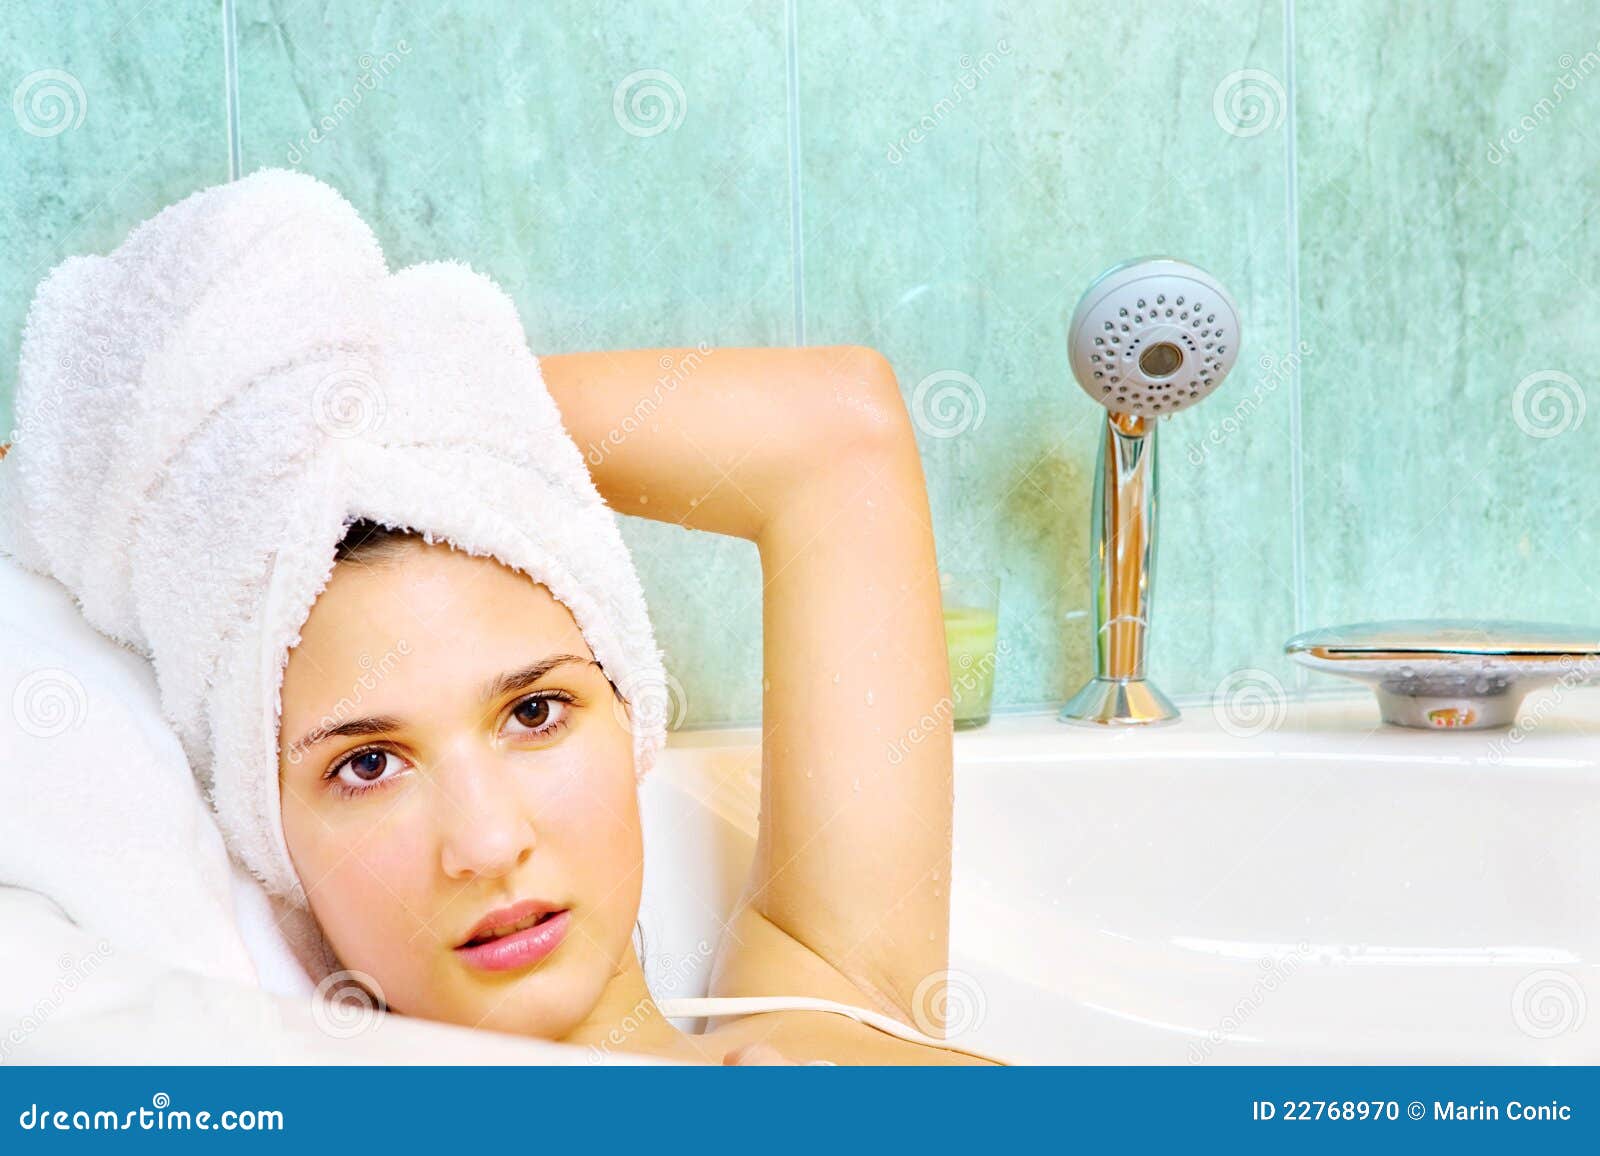 Женщина после ванной. Девушка в полотенце в ванной. Женщина с полотенцем на голове. Девушка после ванной. Мытая голова в полотенце.